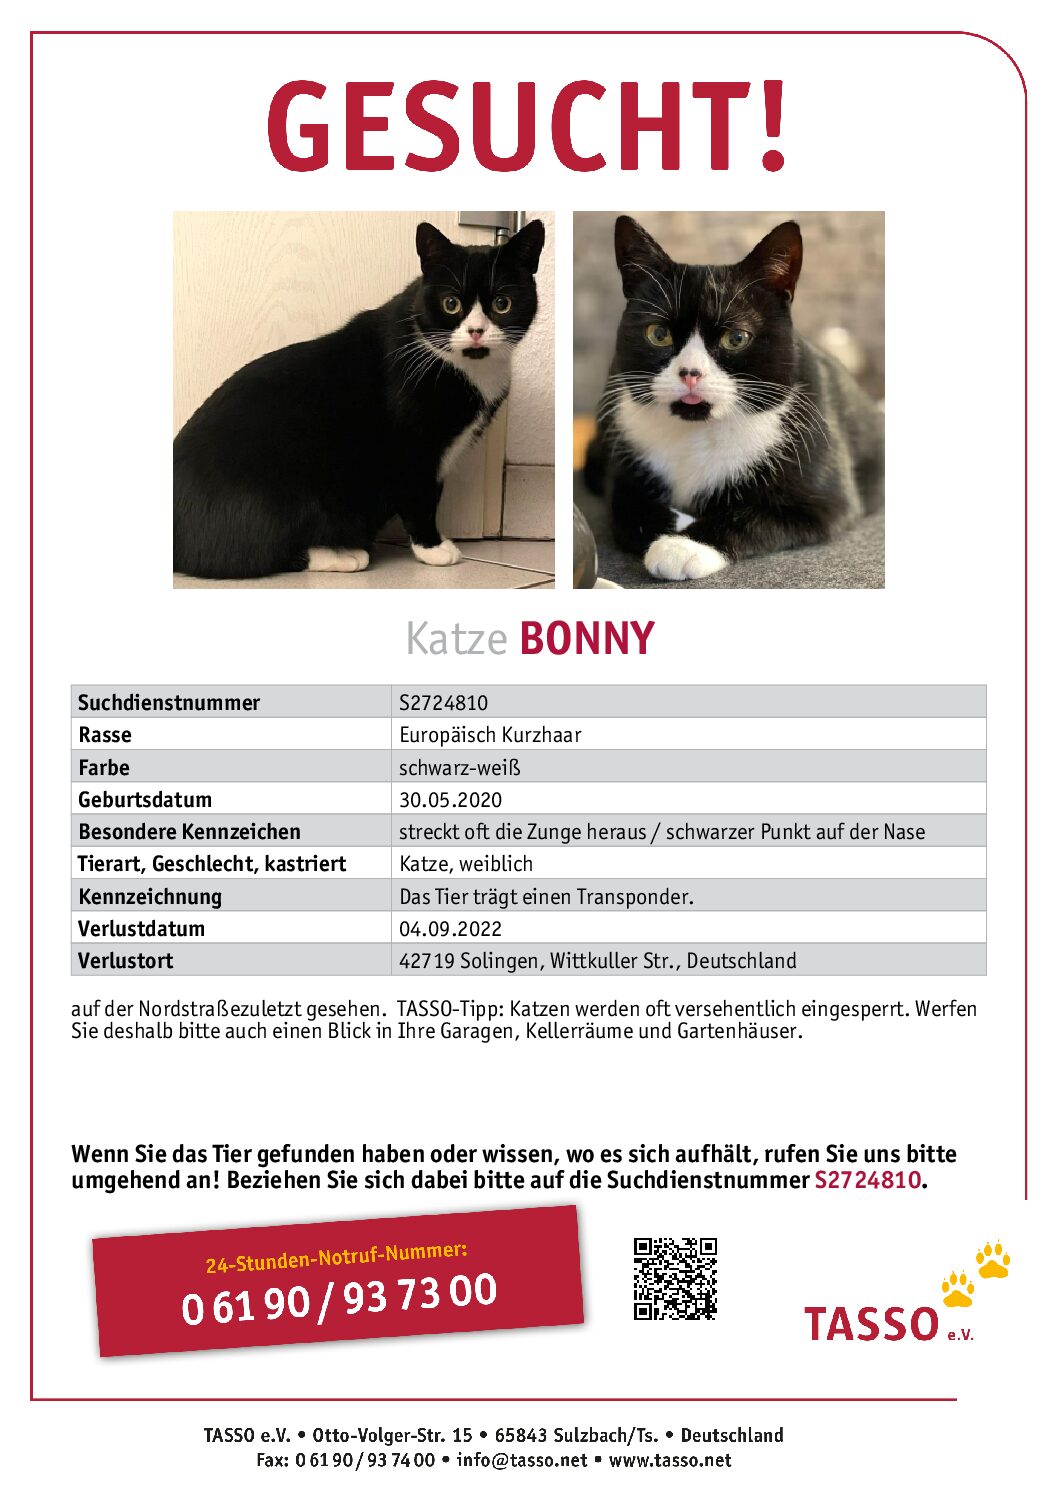 Vermisst: Katze Bonny seit 04.09.2022